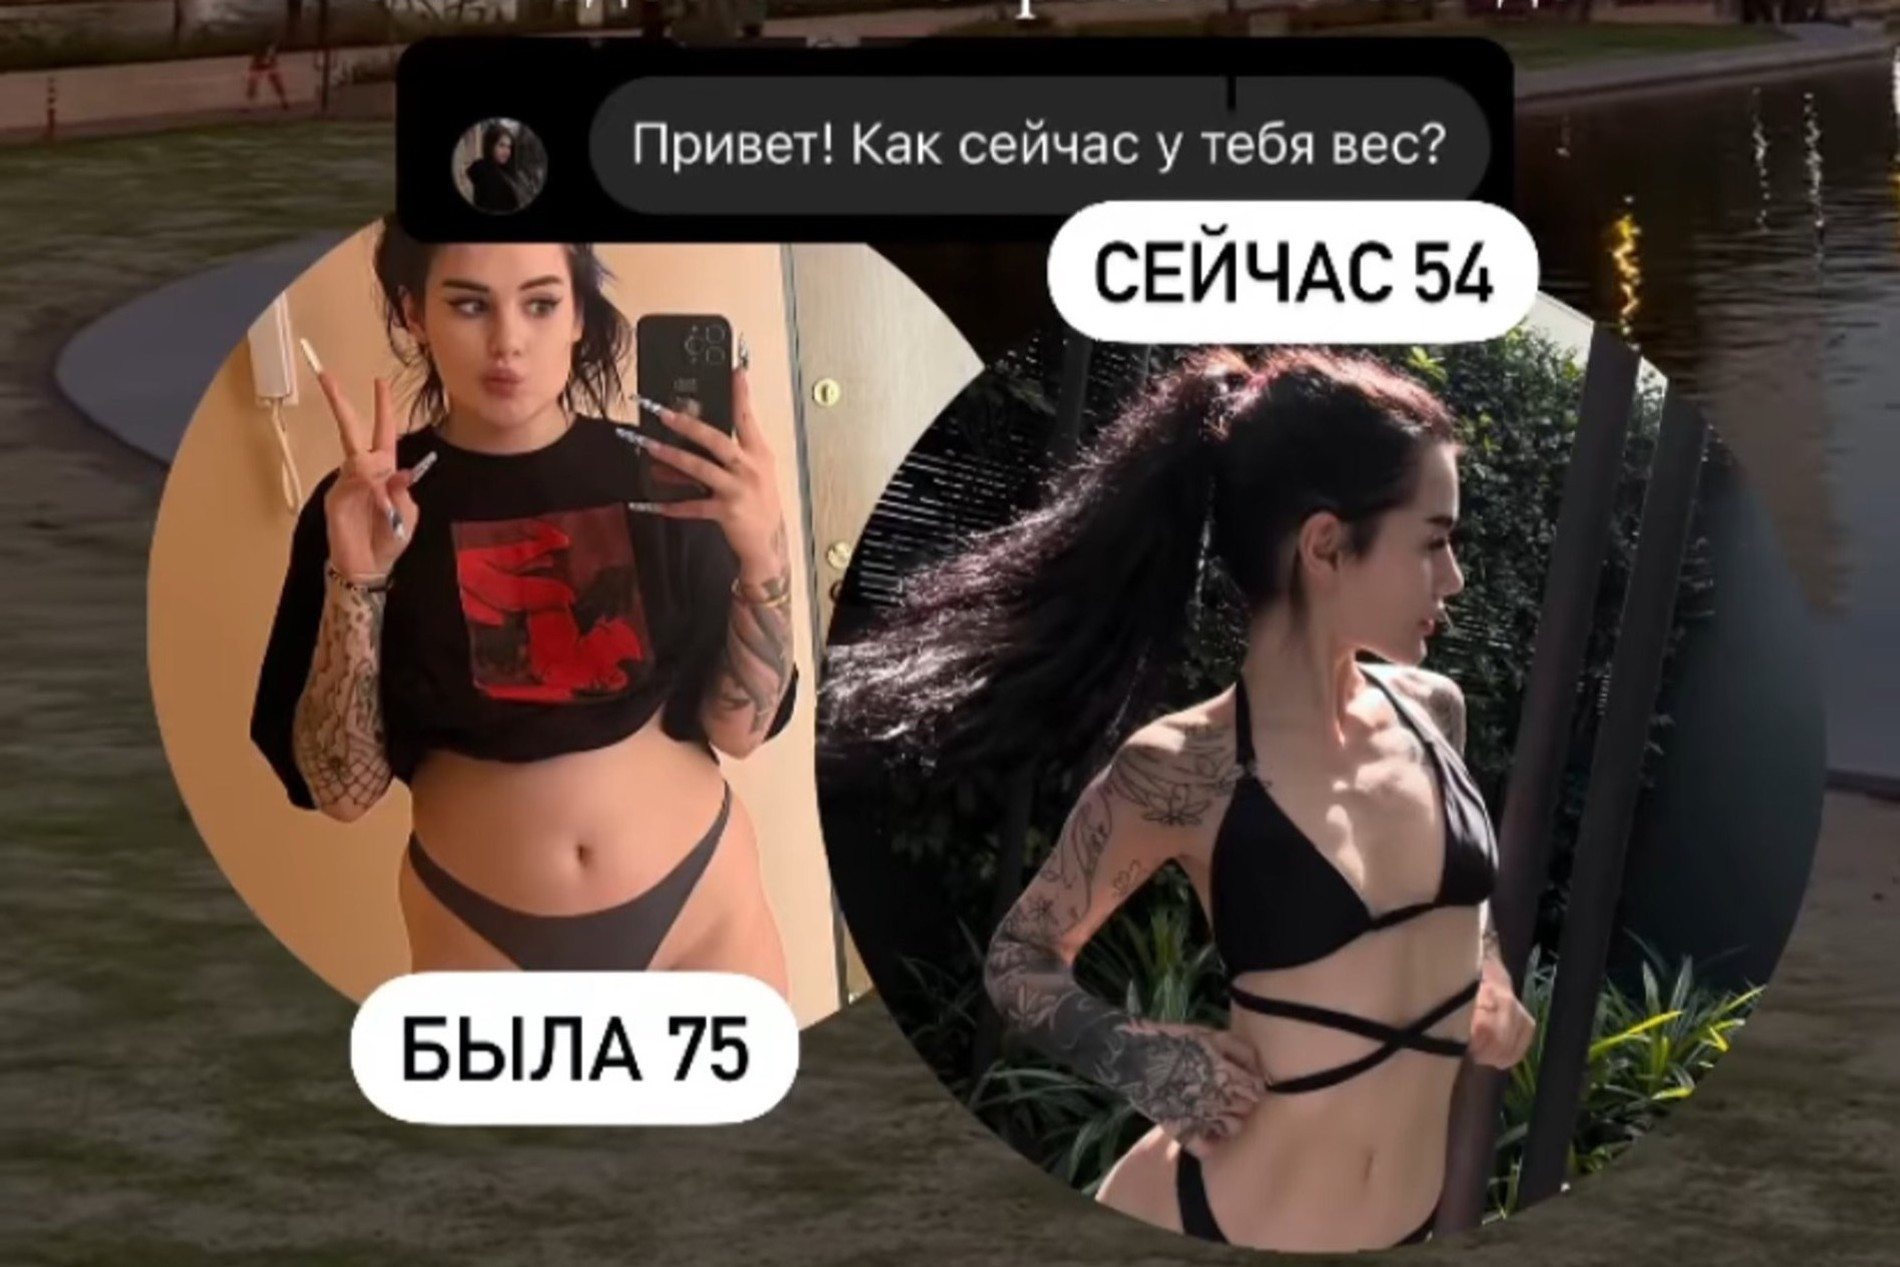 Карина Аракелян показала результат похудения
Фото: «Инстаграм» (запрещен в РФ)